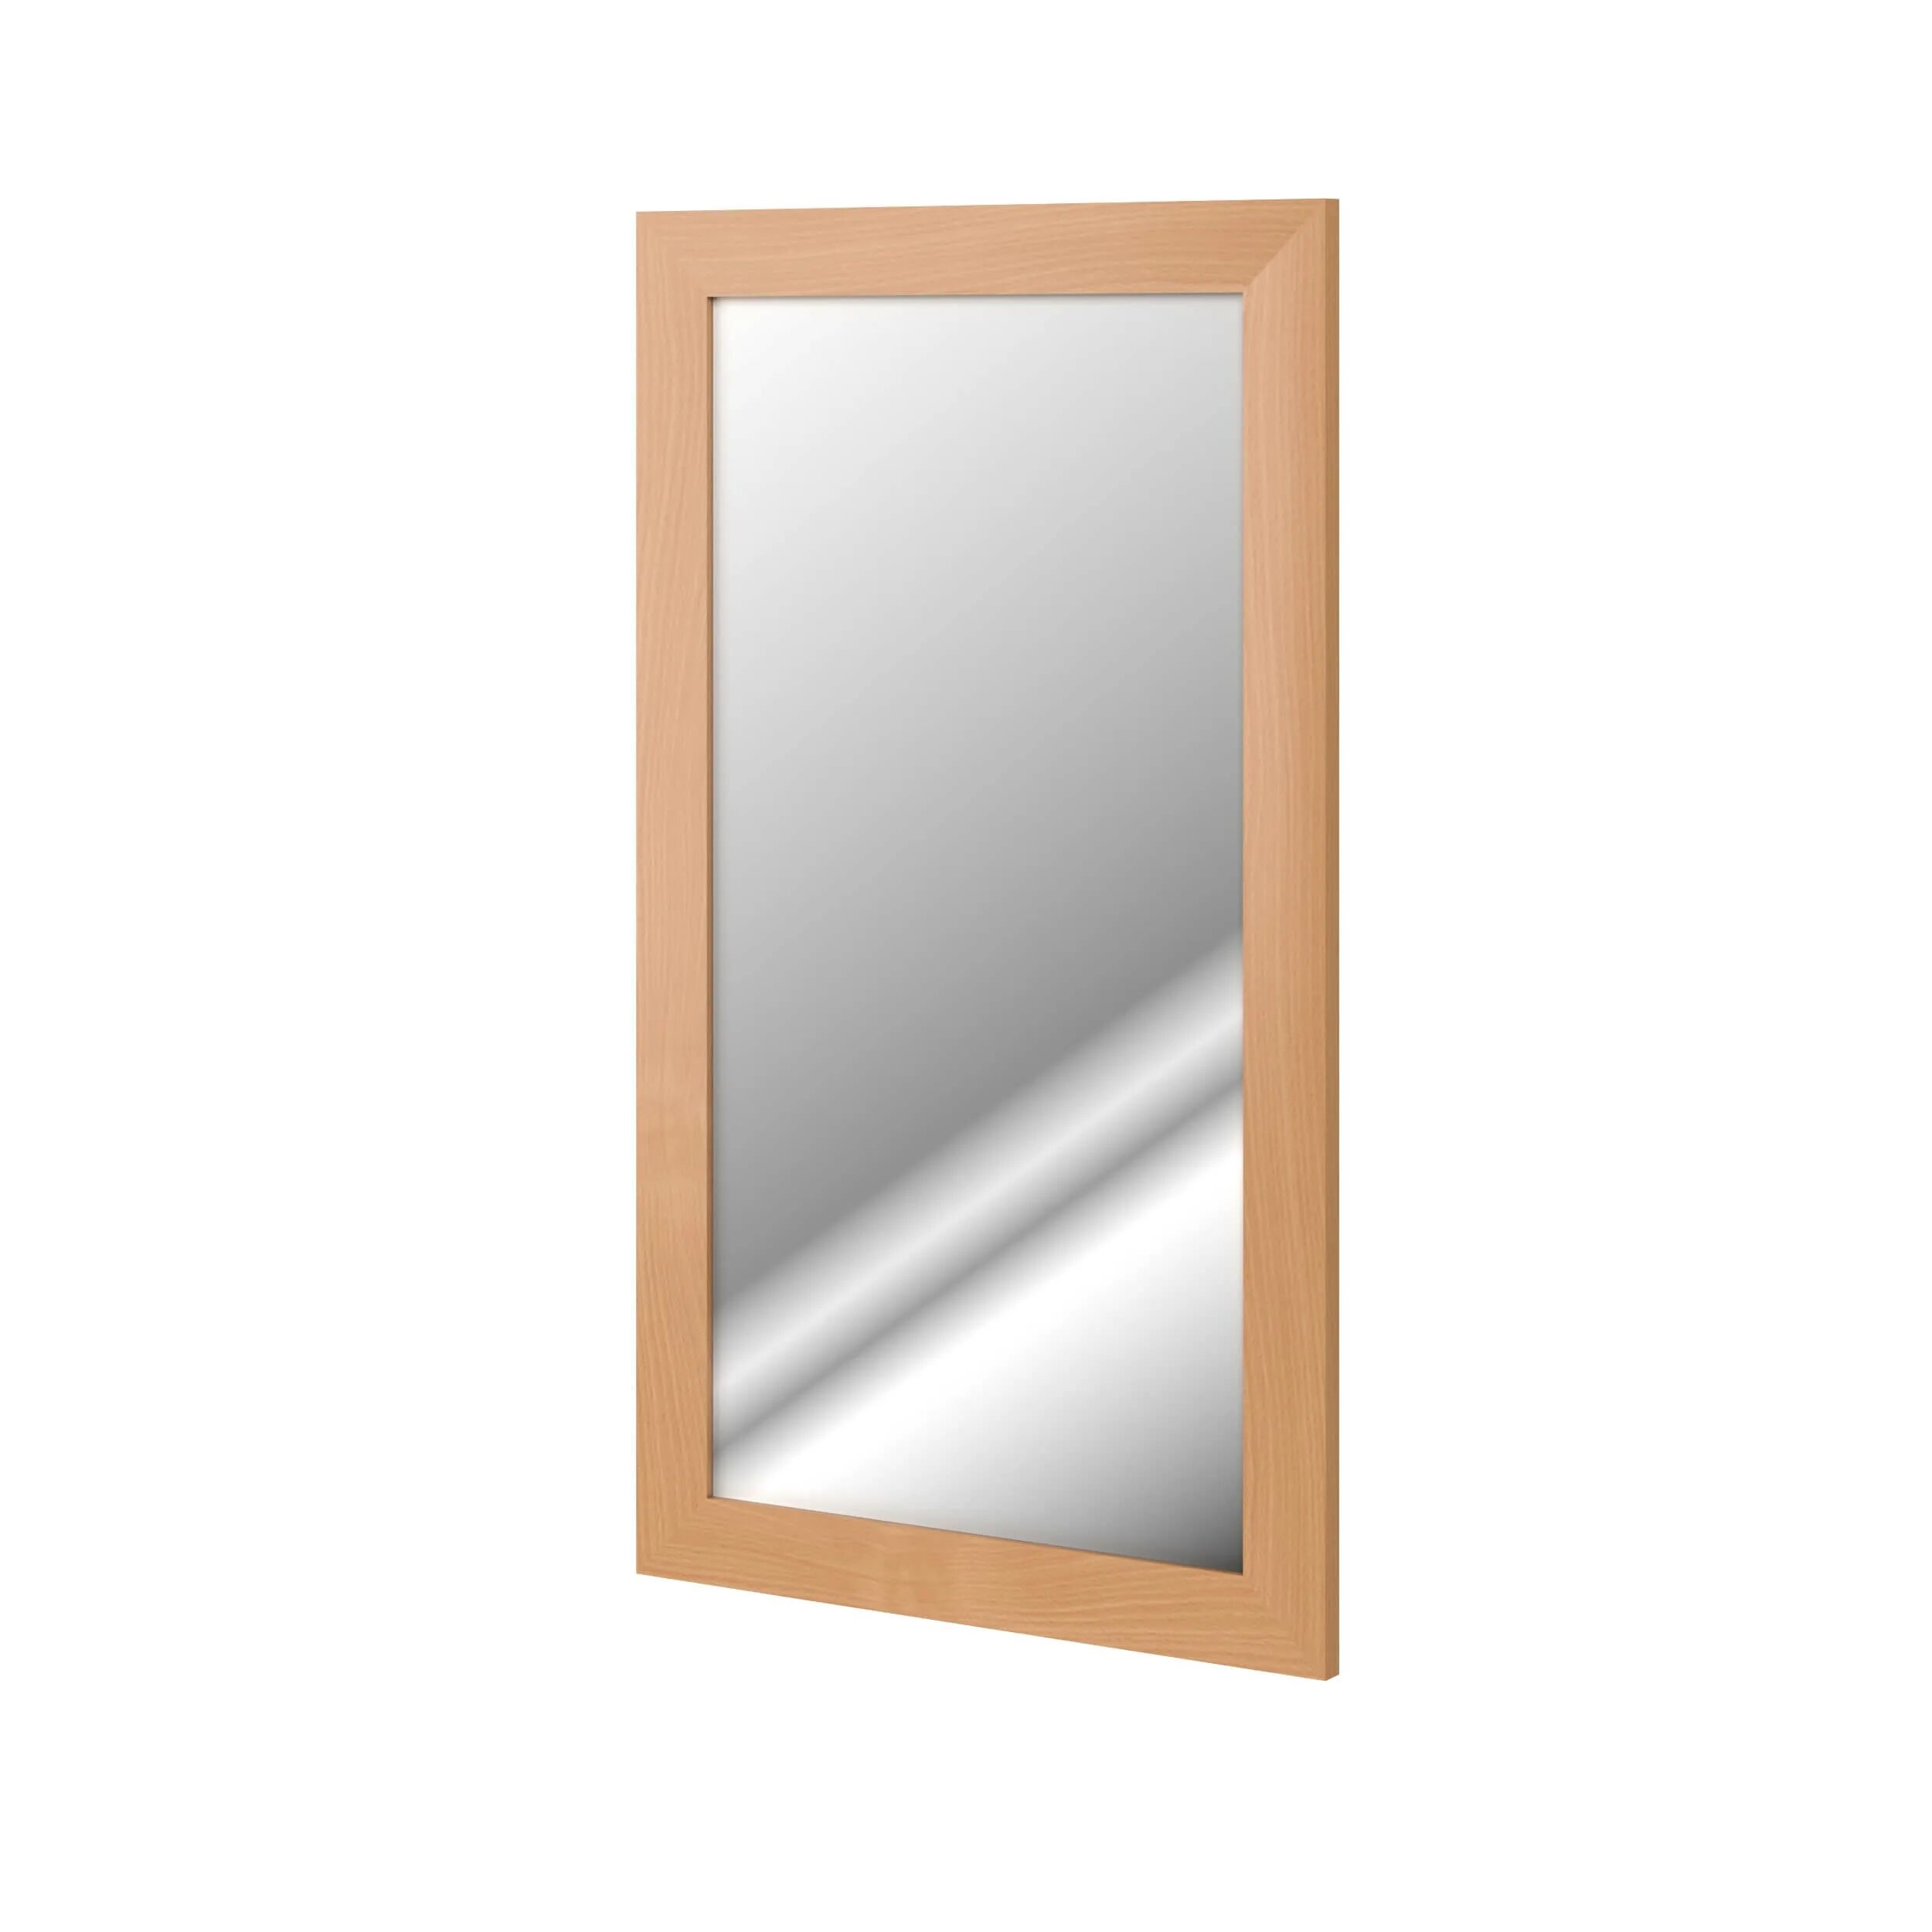 Купить зеркало настенное недорого. Зеркало навесное дуб сонома 500х20х880 мм. Зеркало Домино МДФ dm9007z. Зеркало Авелино 500 700. Зеркало настенное 435х875х4мм Asahi Glass этикетка.